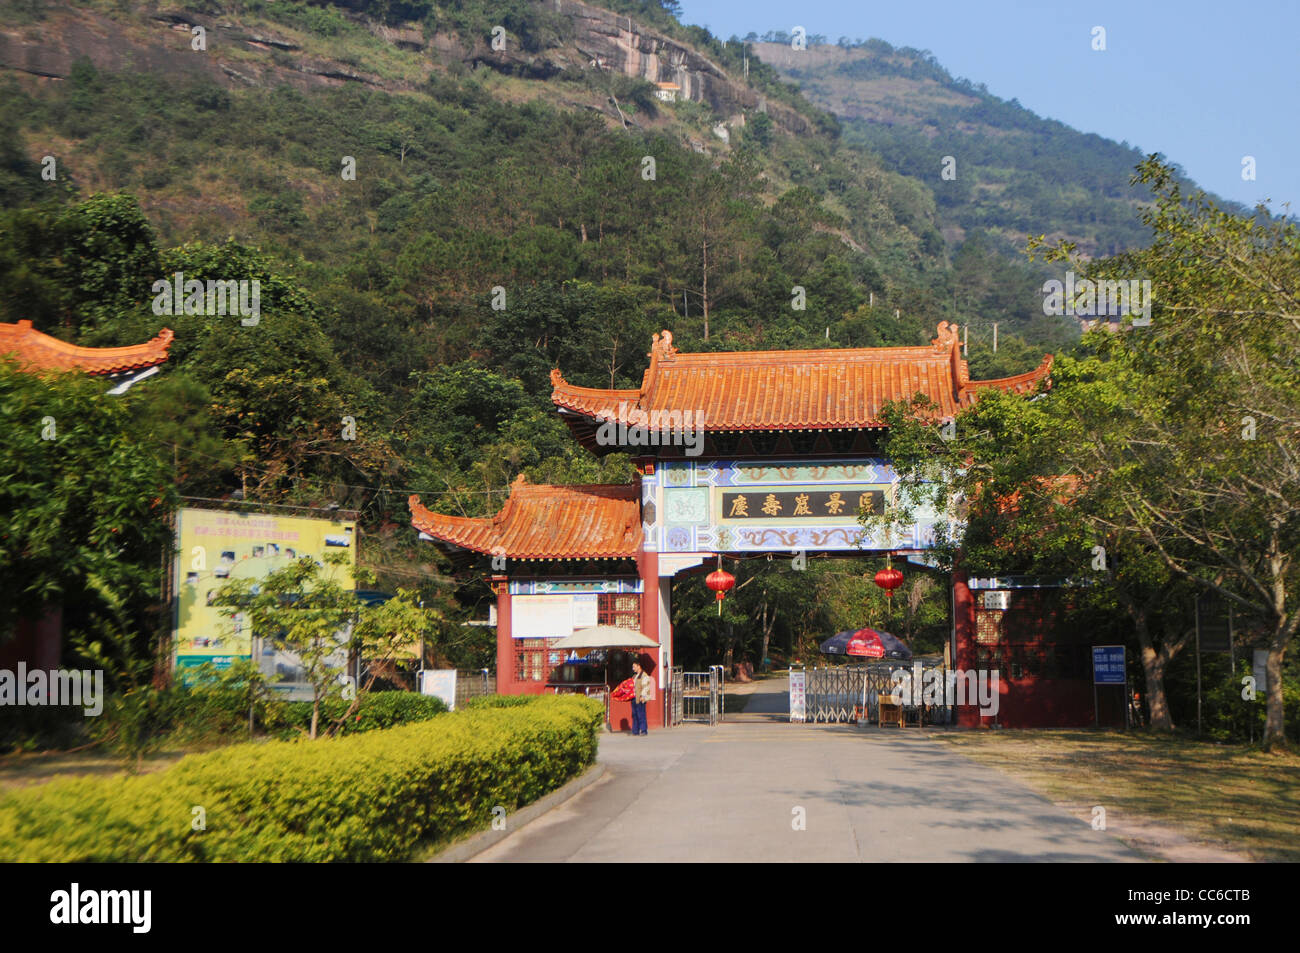 Entrance of Qingshou Rock, Duqiao Mountain, Yulin, Guangxi , China Stock Photo